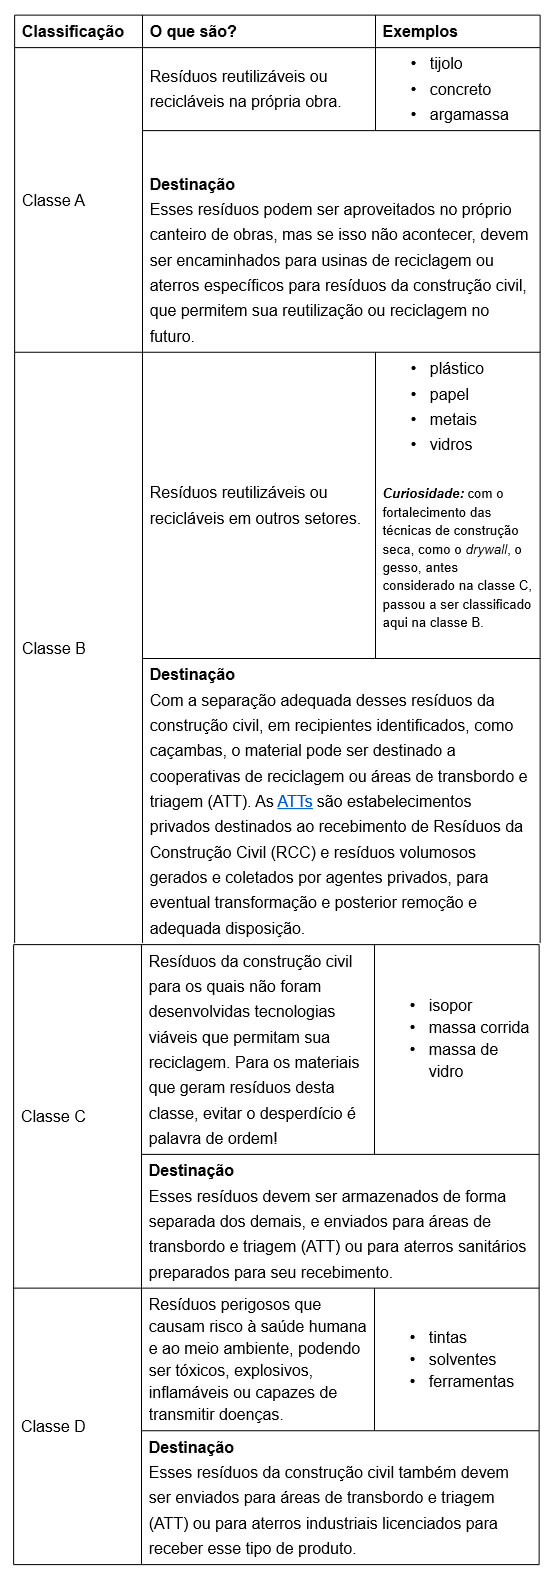 tabela de classificação de resíduos da consturção